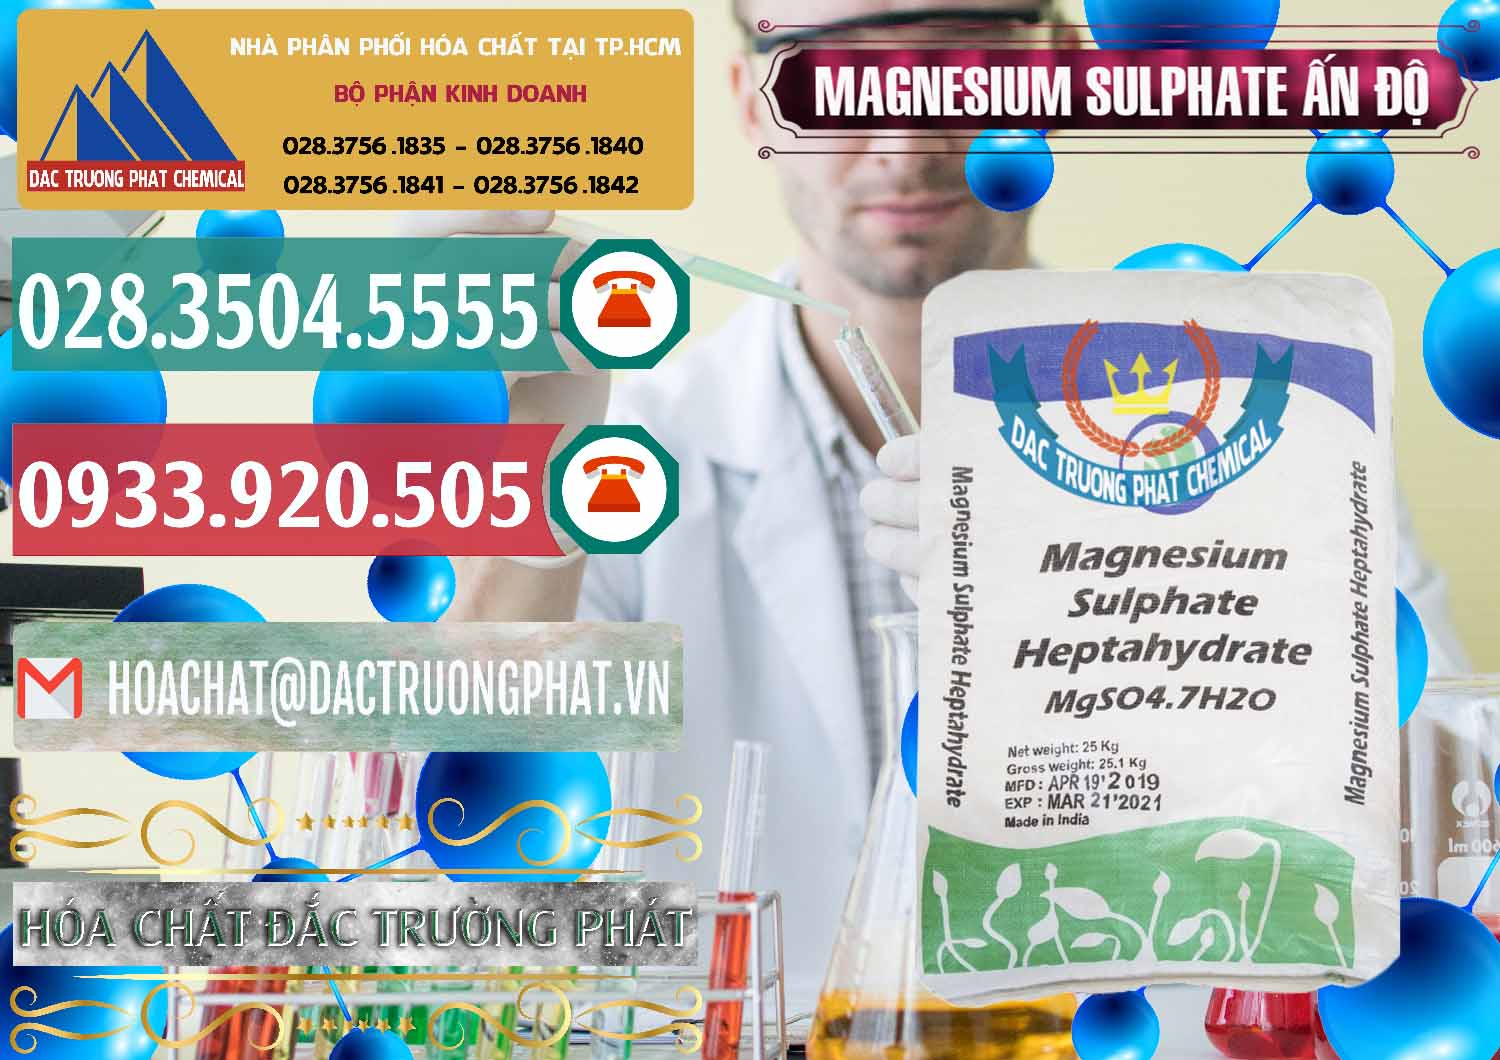 Kinh doanh _ bán MGSO4.7H2O – Magnesium Sulphate Heptahydrate Ấn Độ India - 0362 - Nơi chuyên phân phối ( nhập khẩu ) hóa chất tại TP.HCM - muabanhoachat.vn